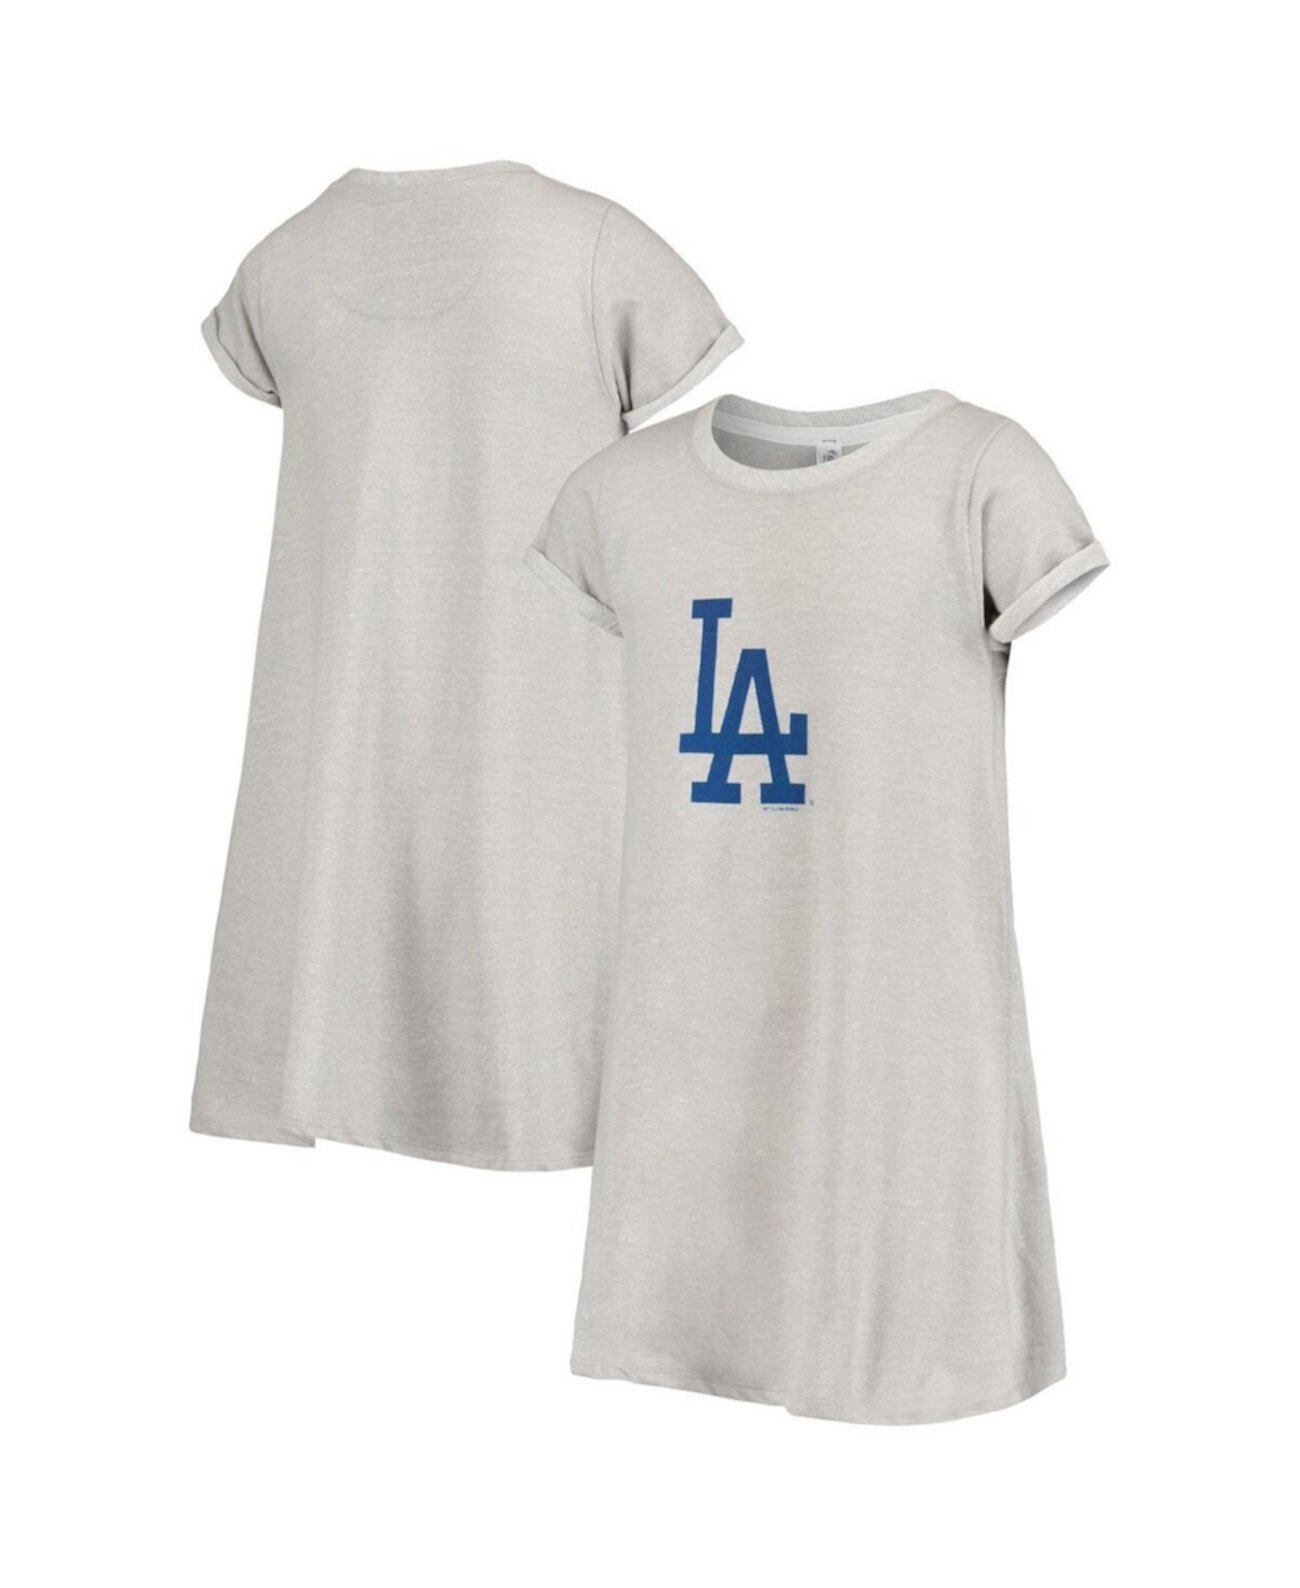 Молодежное серое меланжевое платье Los Angeles Dodgers для девочек Soft As A Grape